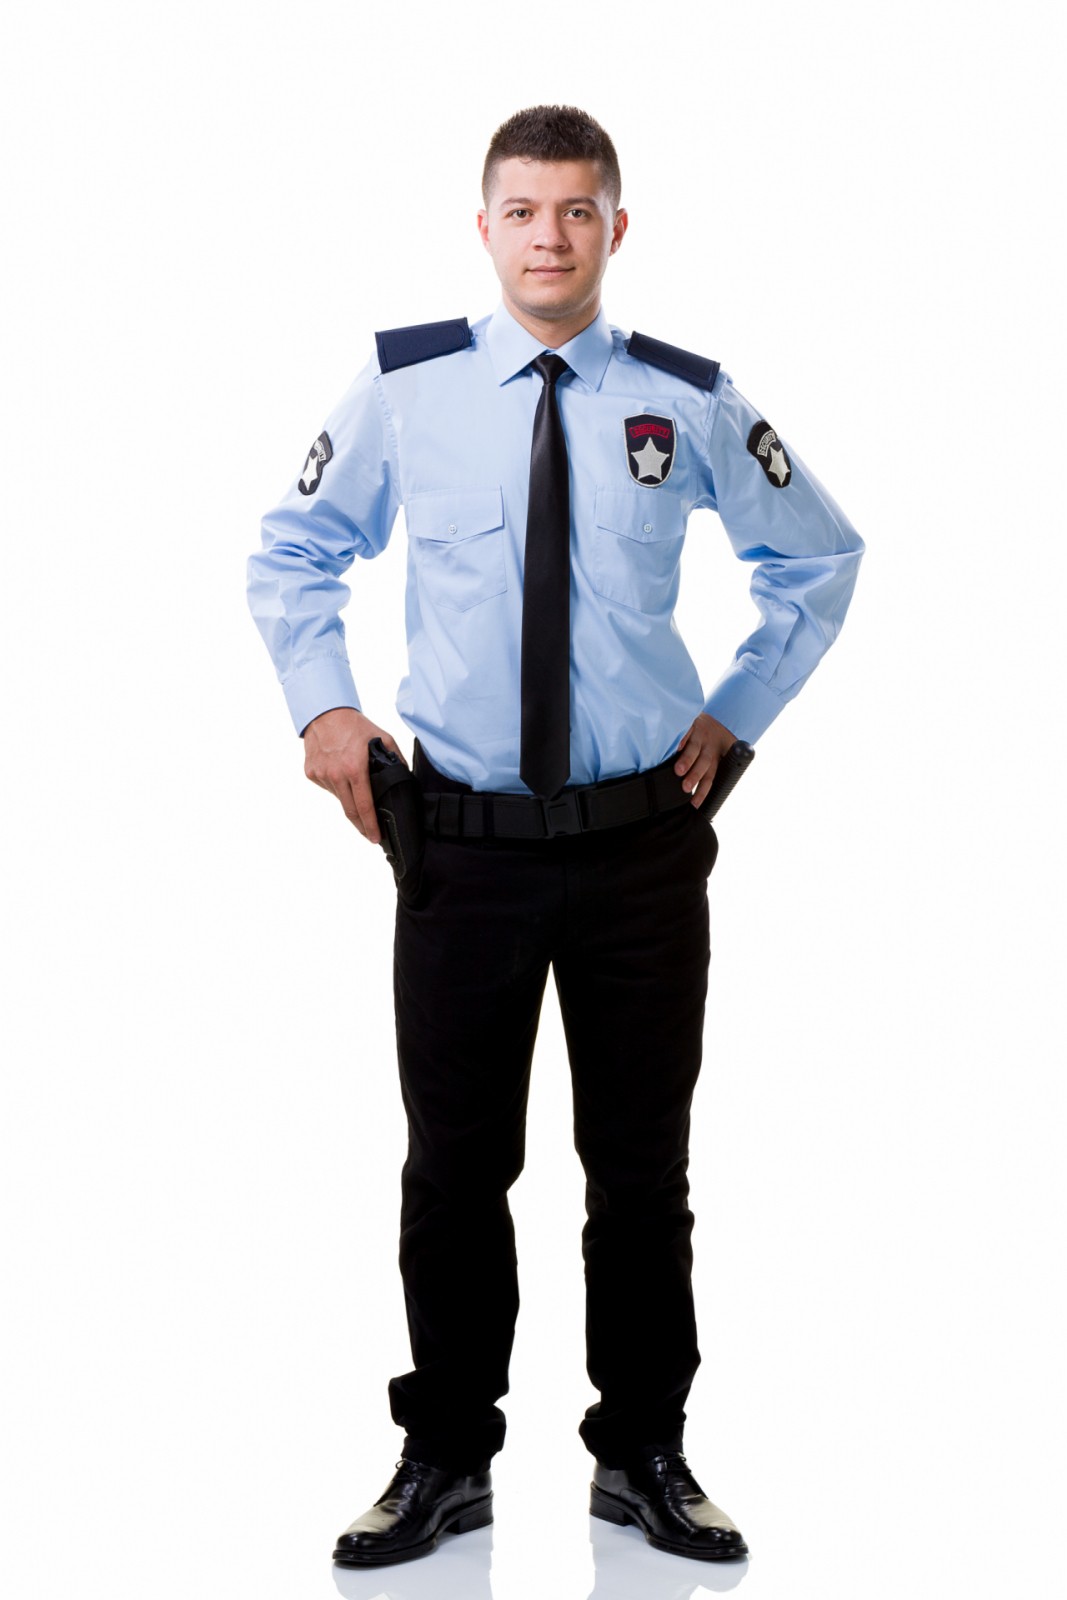 Polizeivollzugsbeamter (m/w/d)